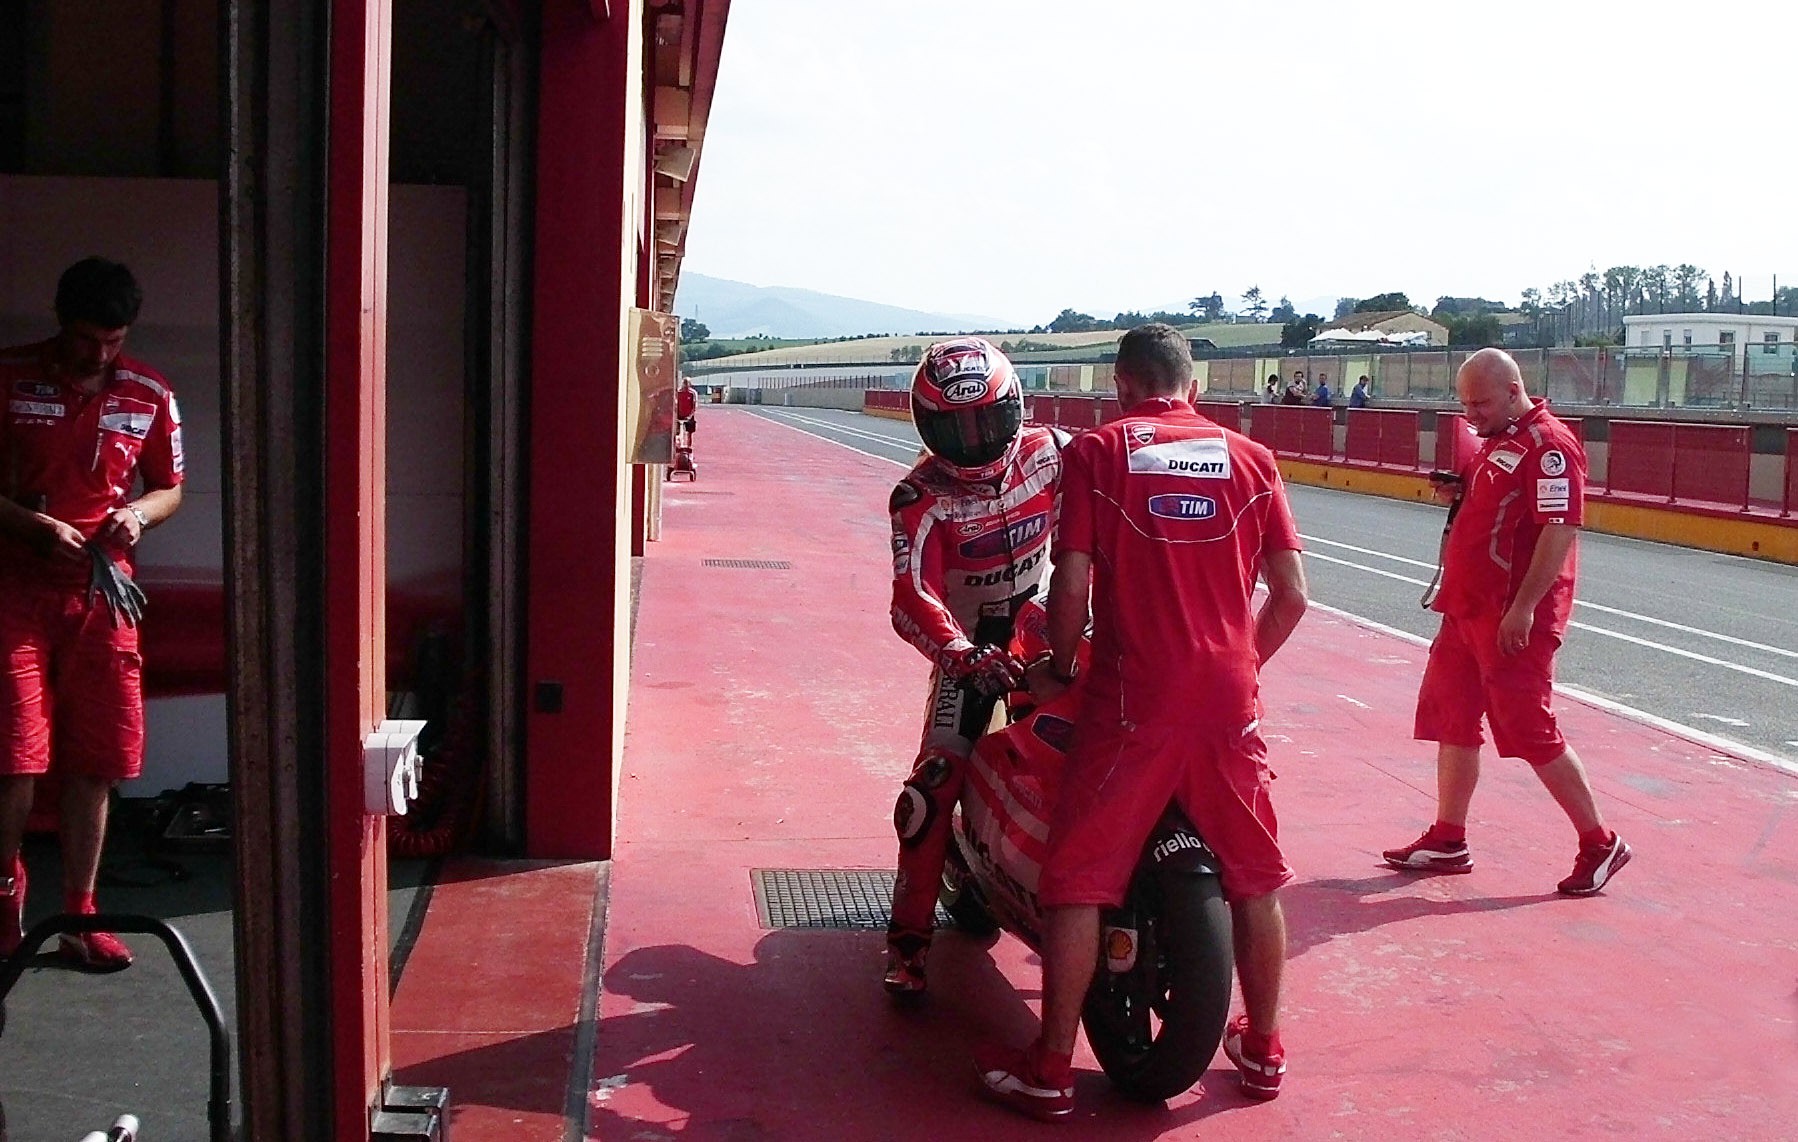 Hayden prueba la Ducati GP 12 en Mugello y hoy le toca a Rossi